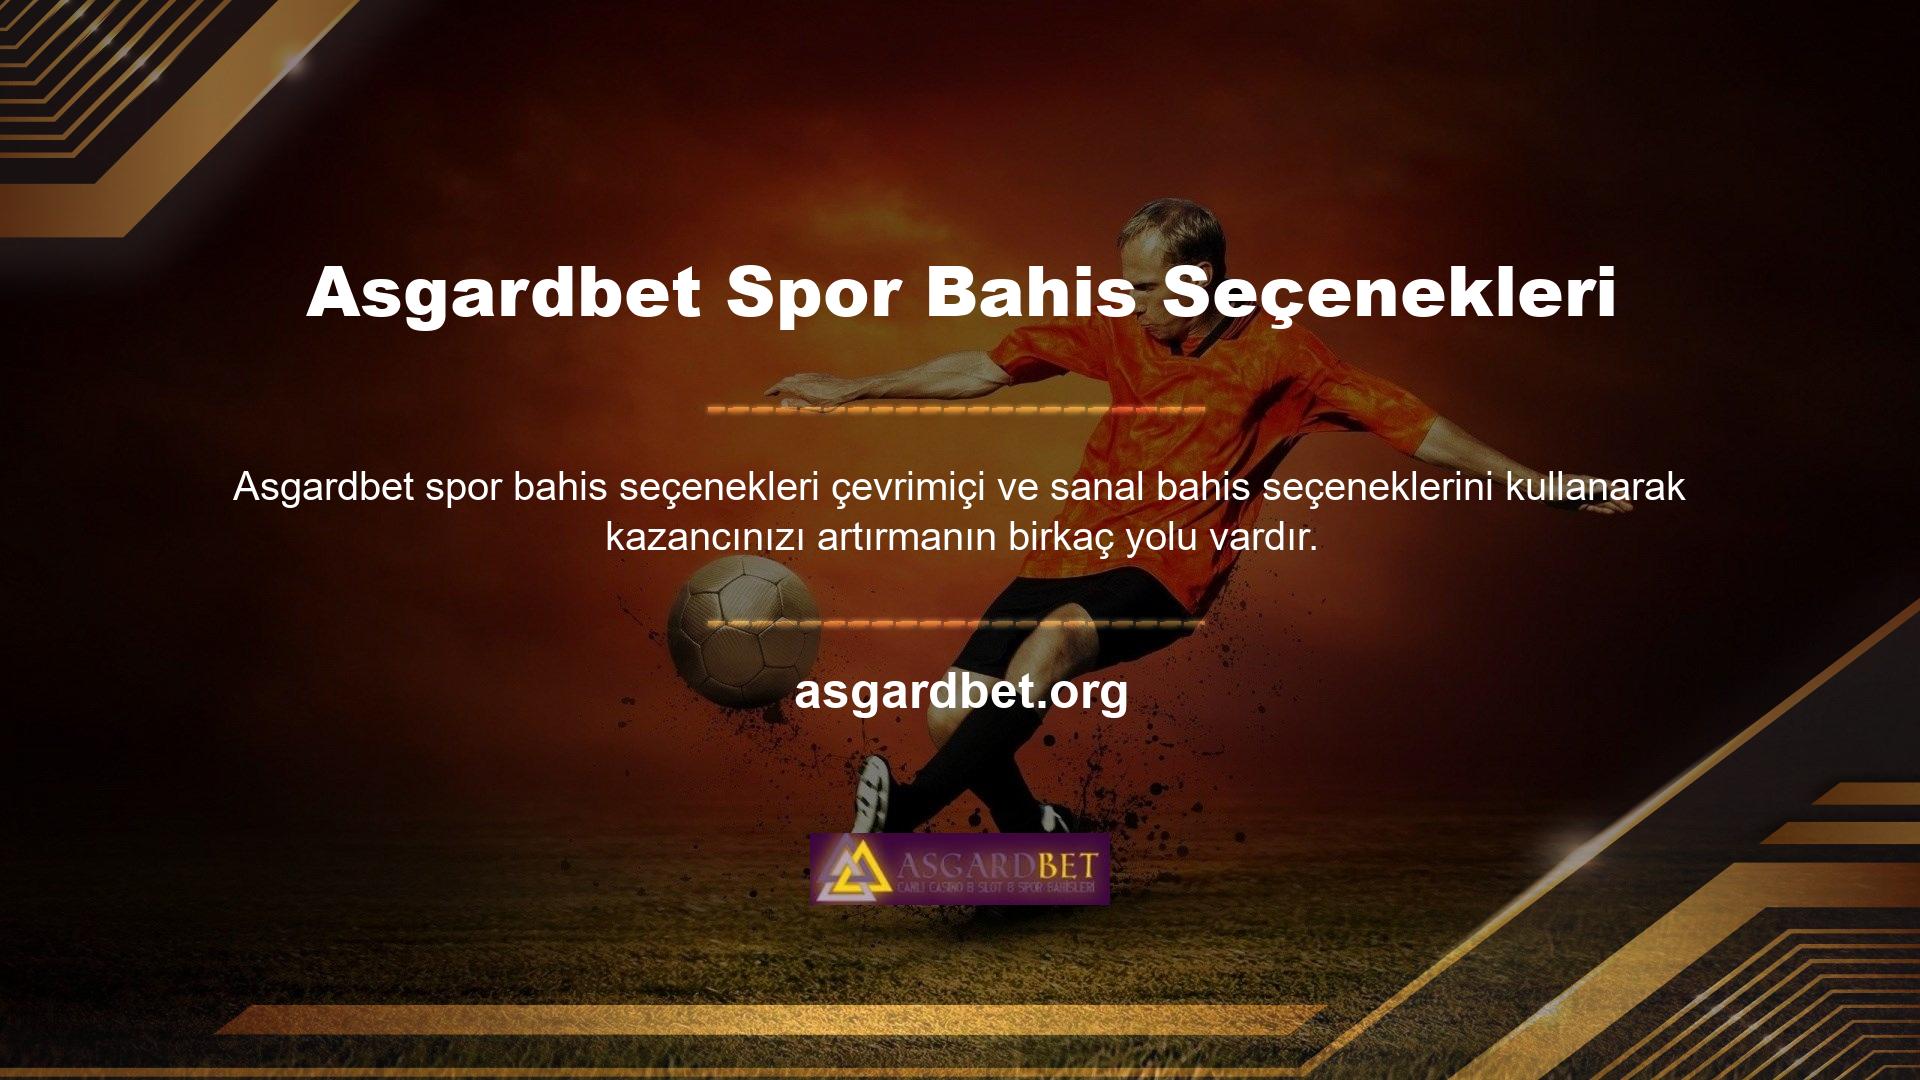 Asgardbet spor bahis seçenekleri kaliteli ve popüler bahis seçenekleri sunmaktadır